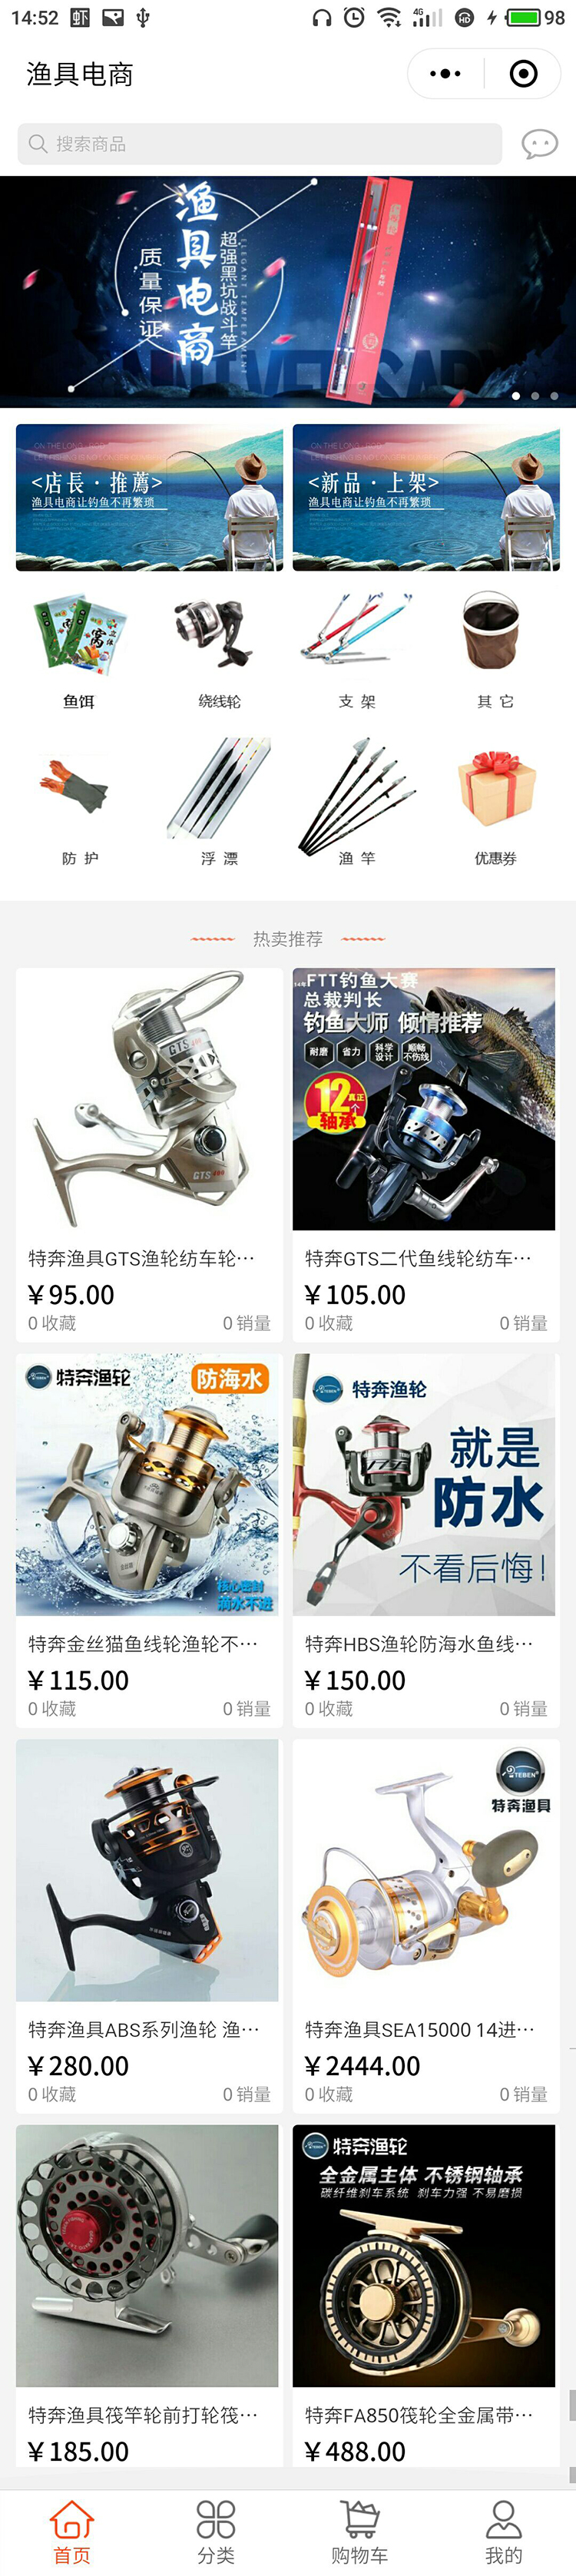 渔具蓝色重庆-渔具电商-商城小程序高级版.jpg